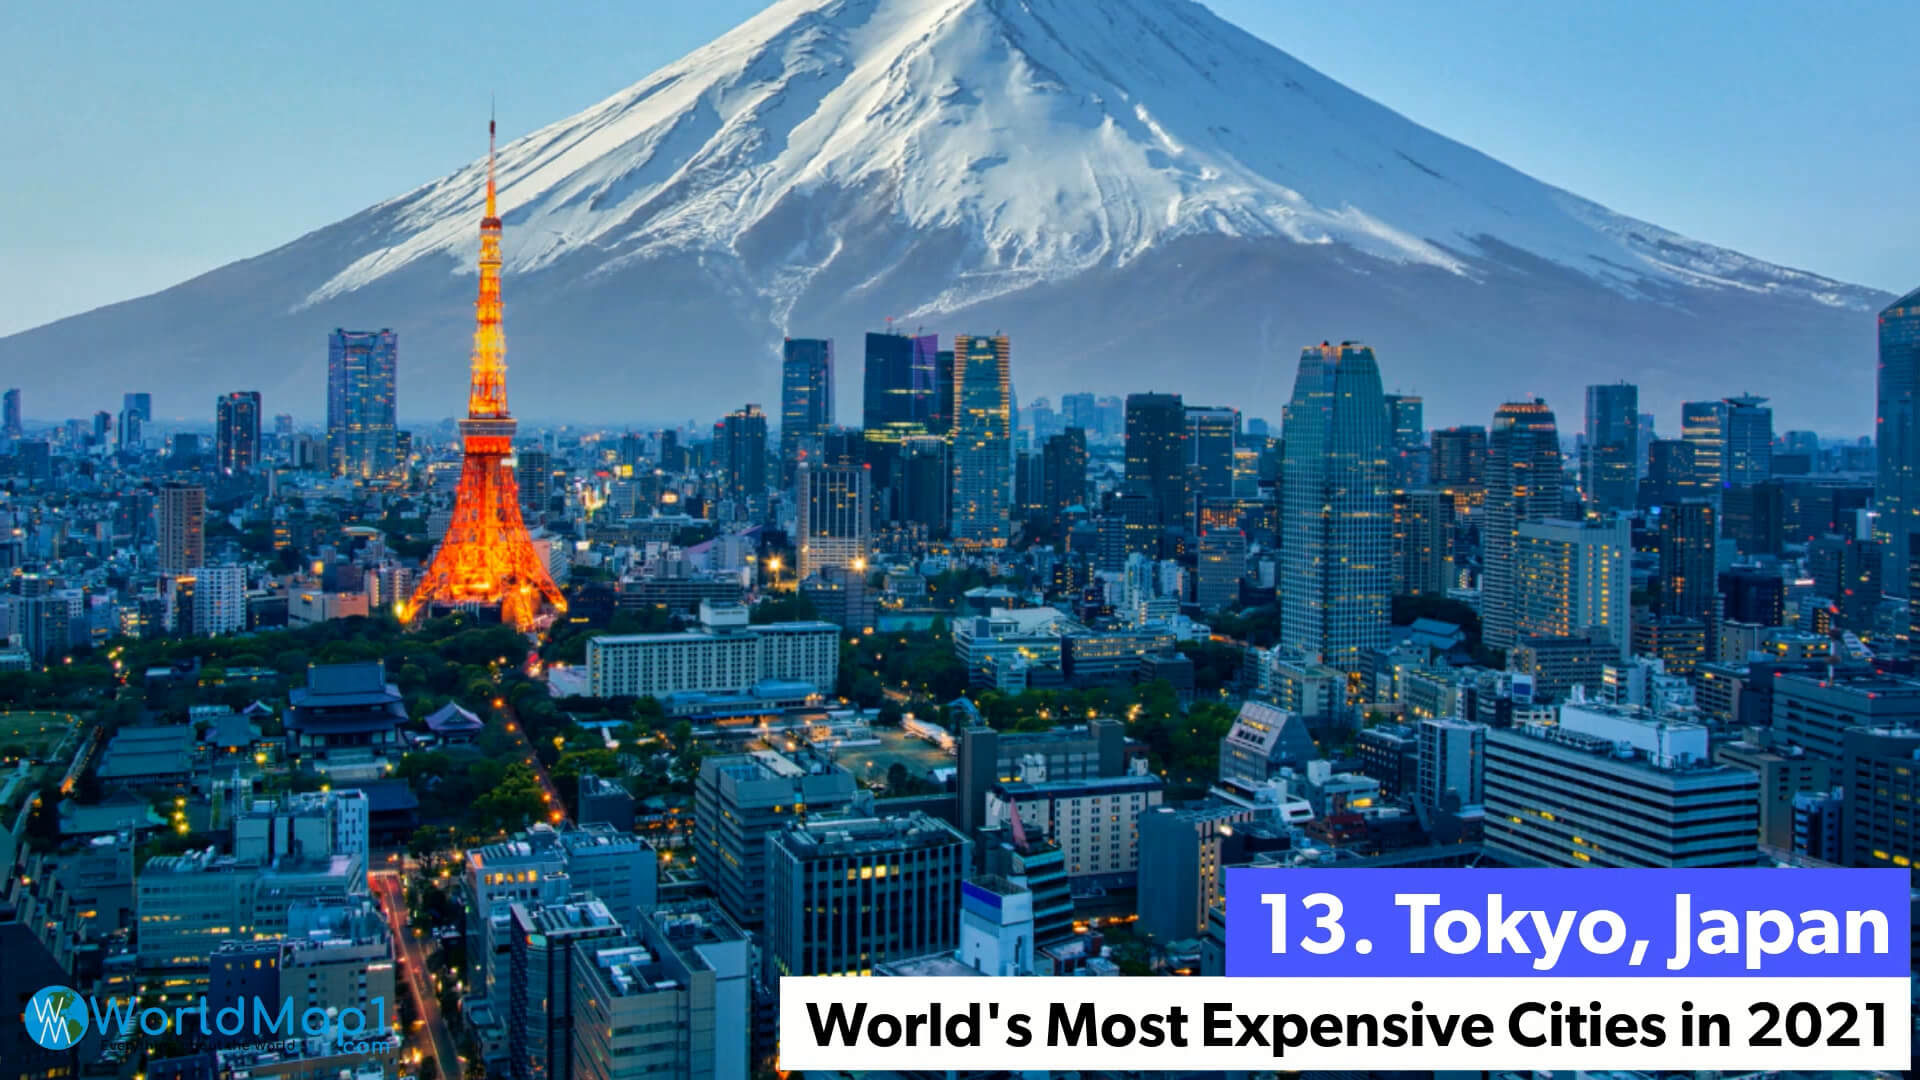 Les villes les plus chères du monde - Tokyo, Japon